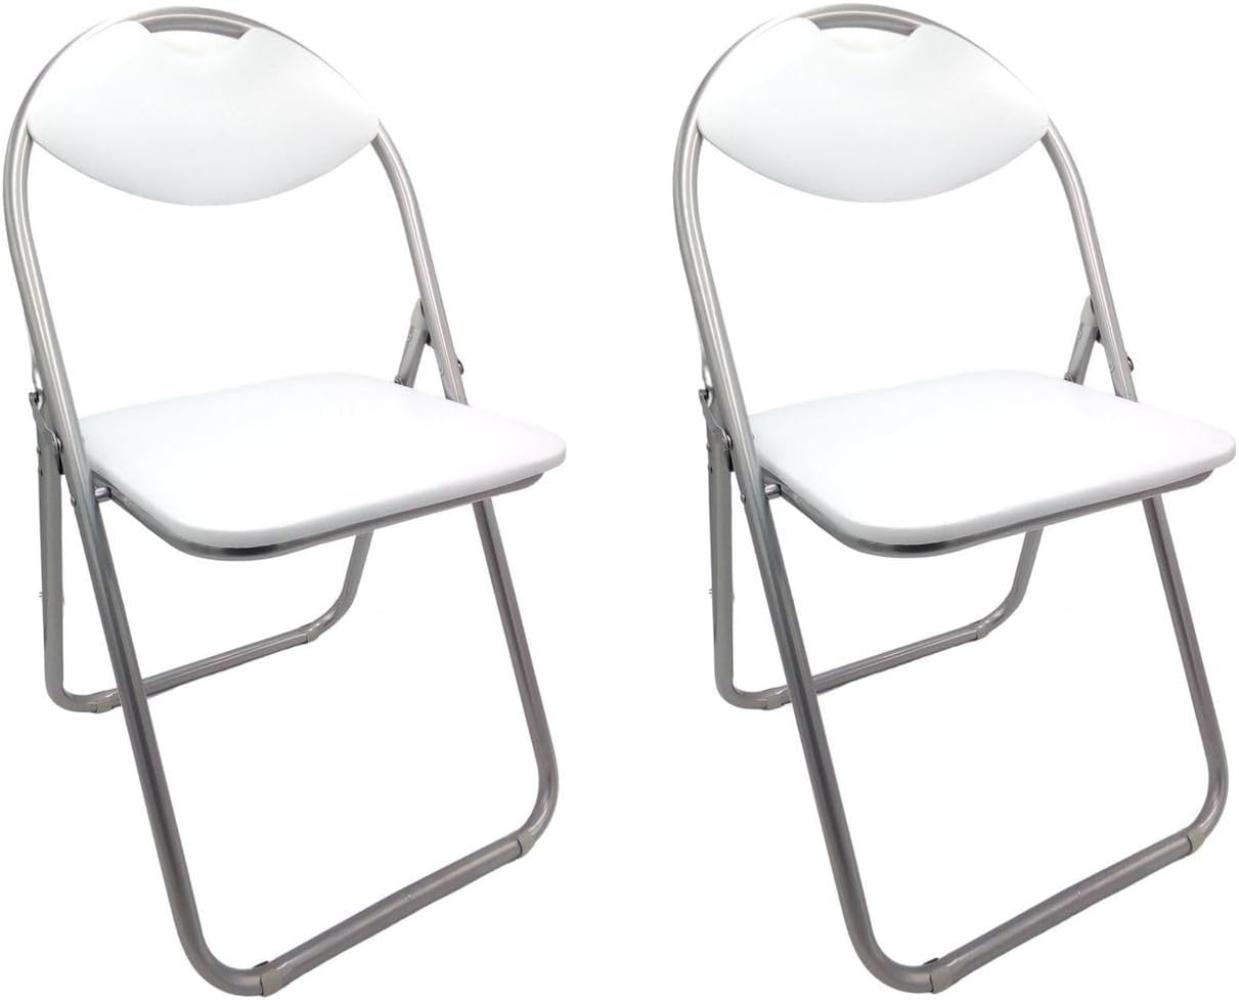 2x Metall Klappstühle weiß Gästestühle Stuhl Gäste Besucherstuhl Gartenstuhl Bild 1